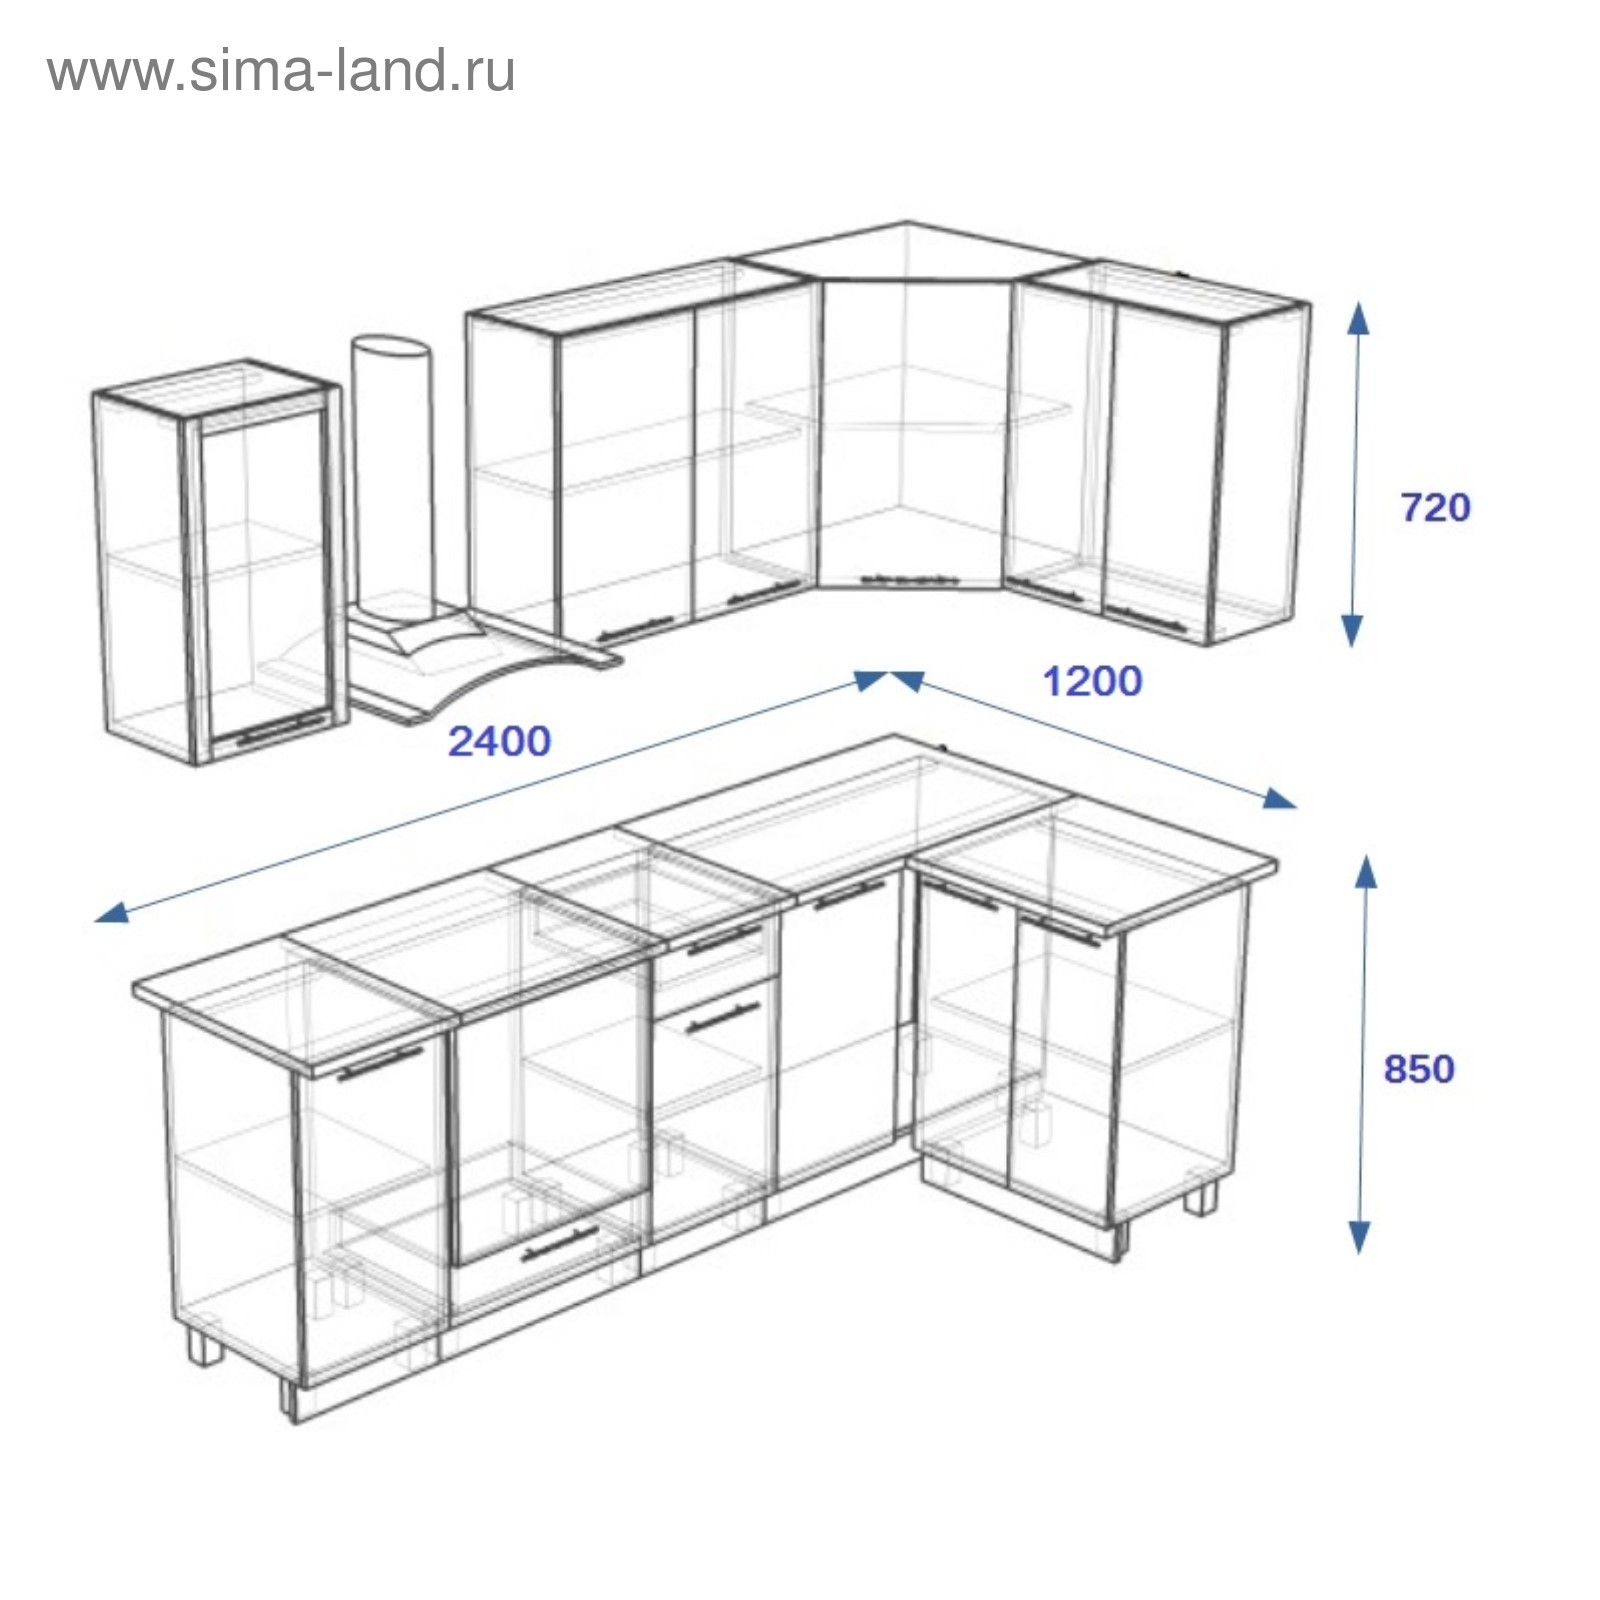 Кухонный гарнитур чертеж с размерами угловой модуль